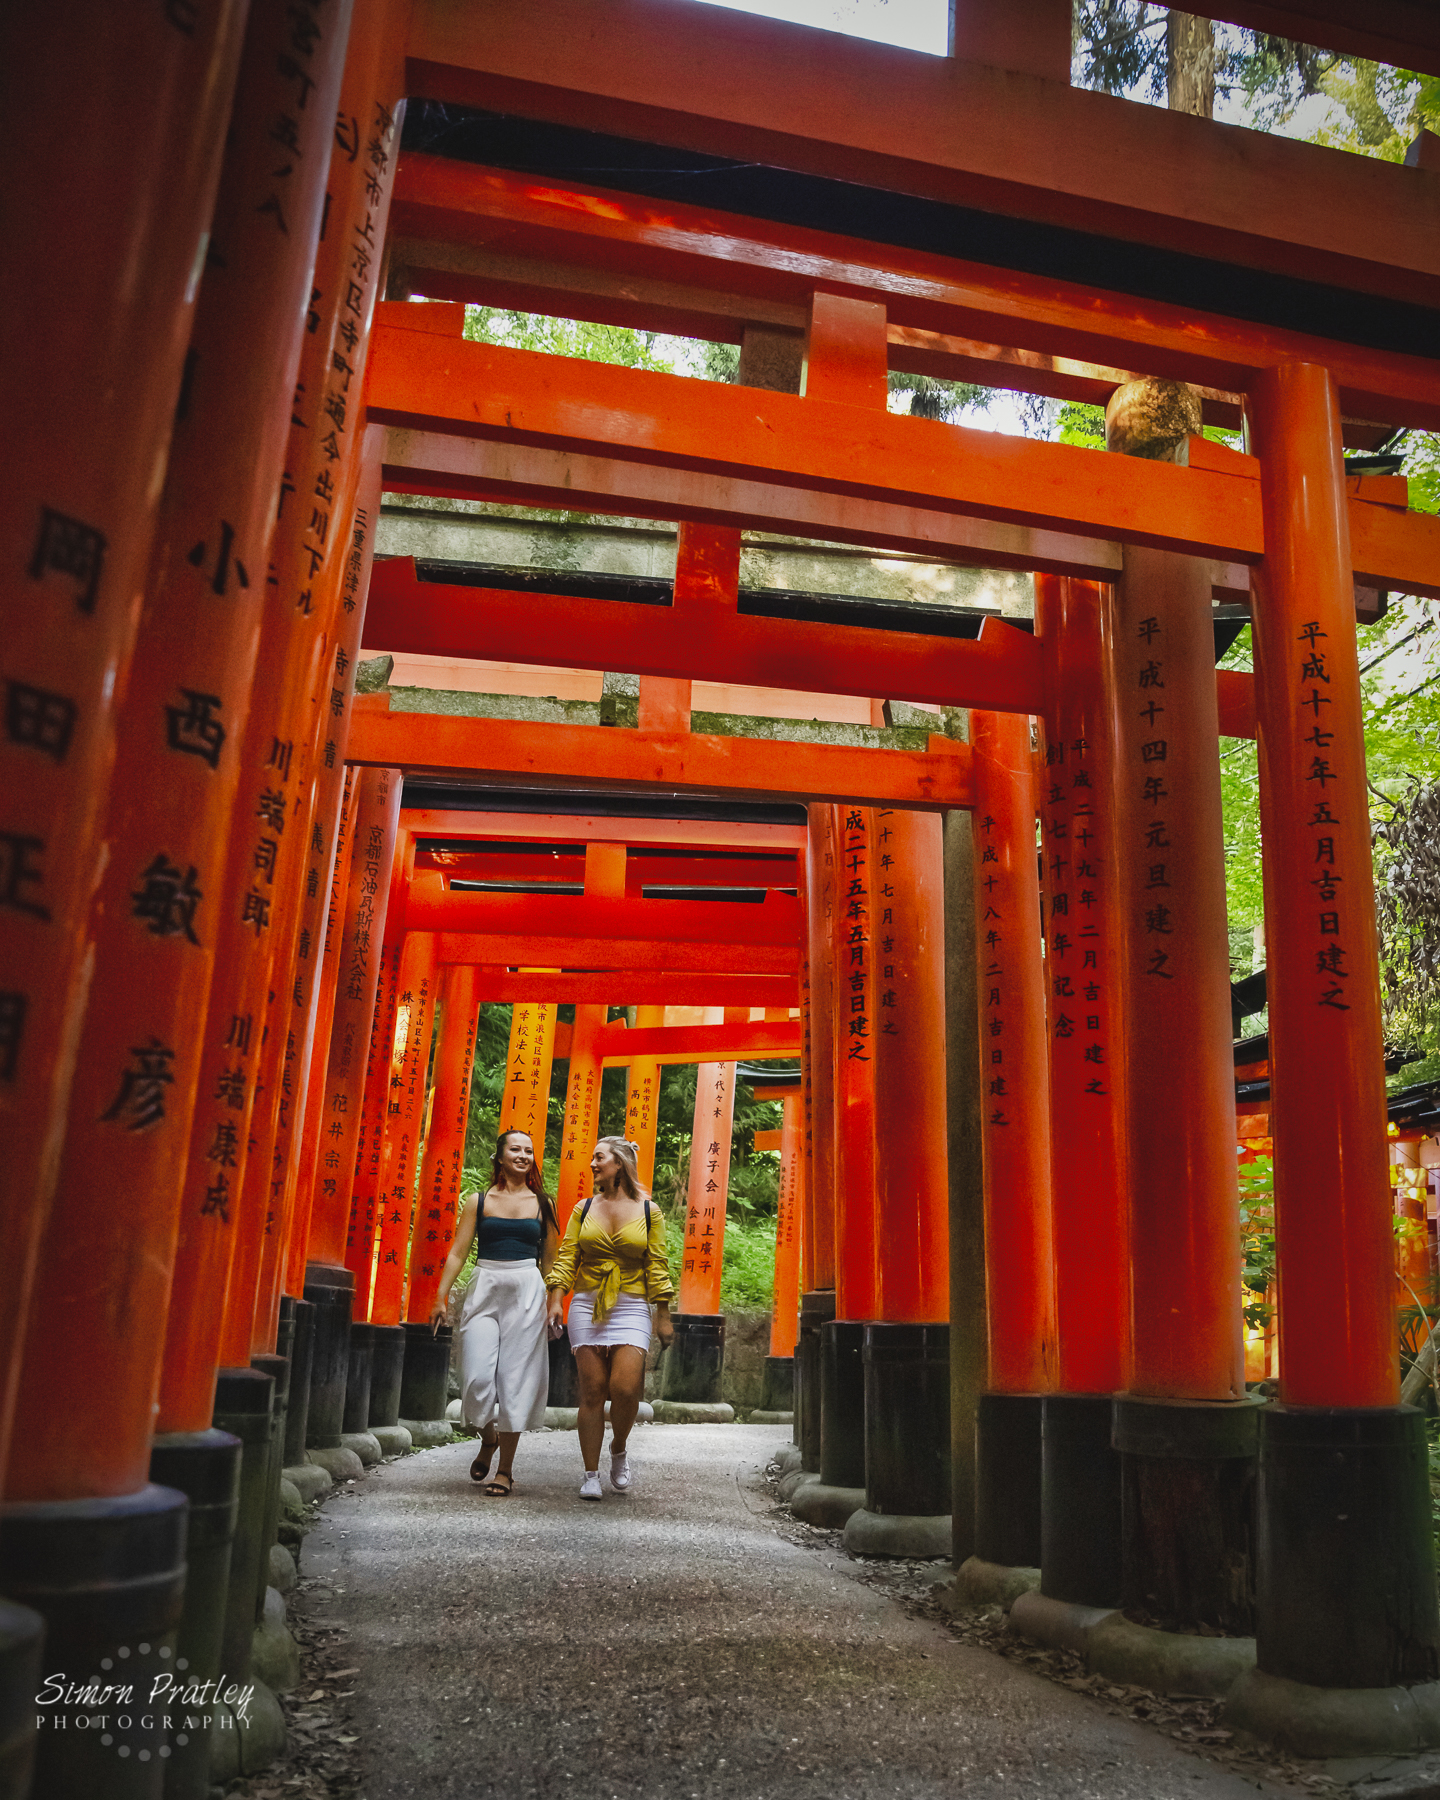 Walking Through Inari